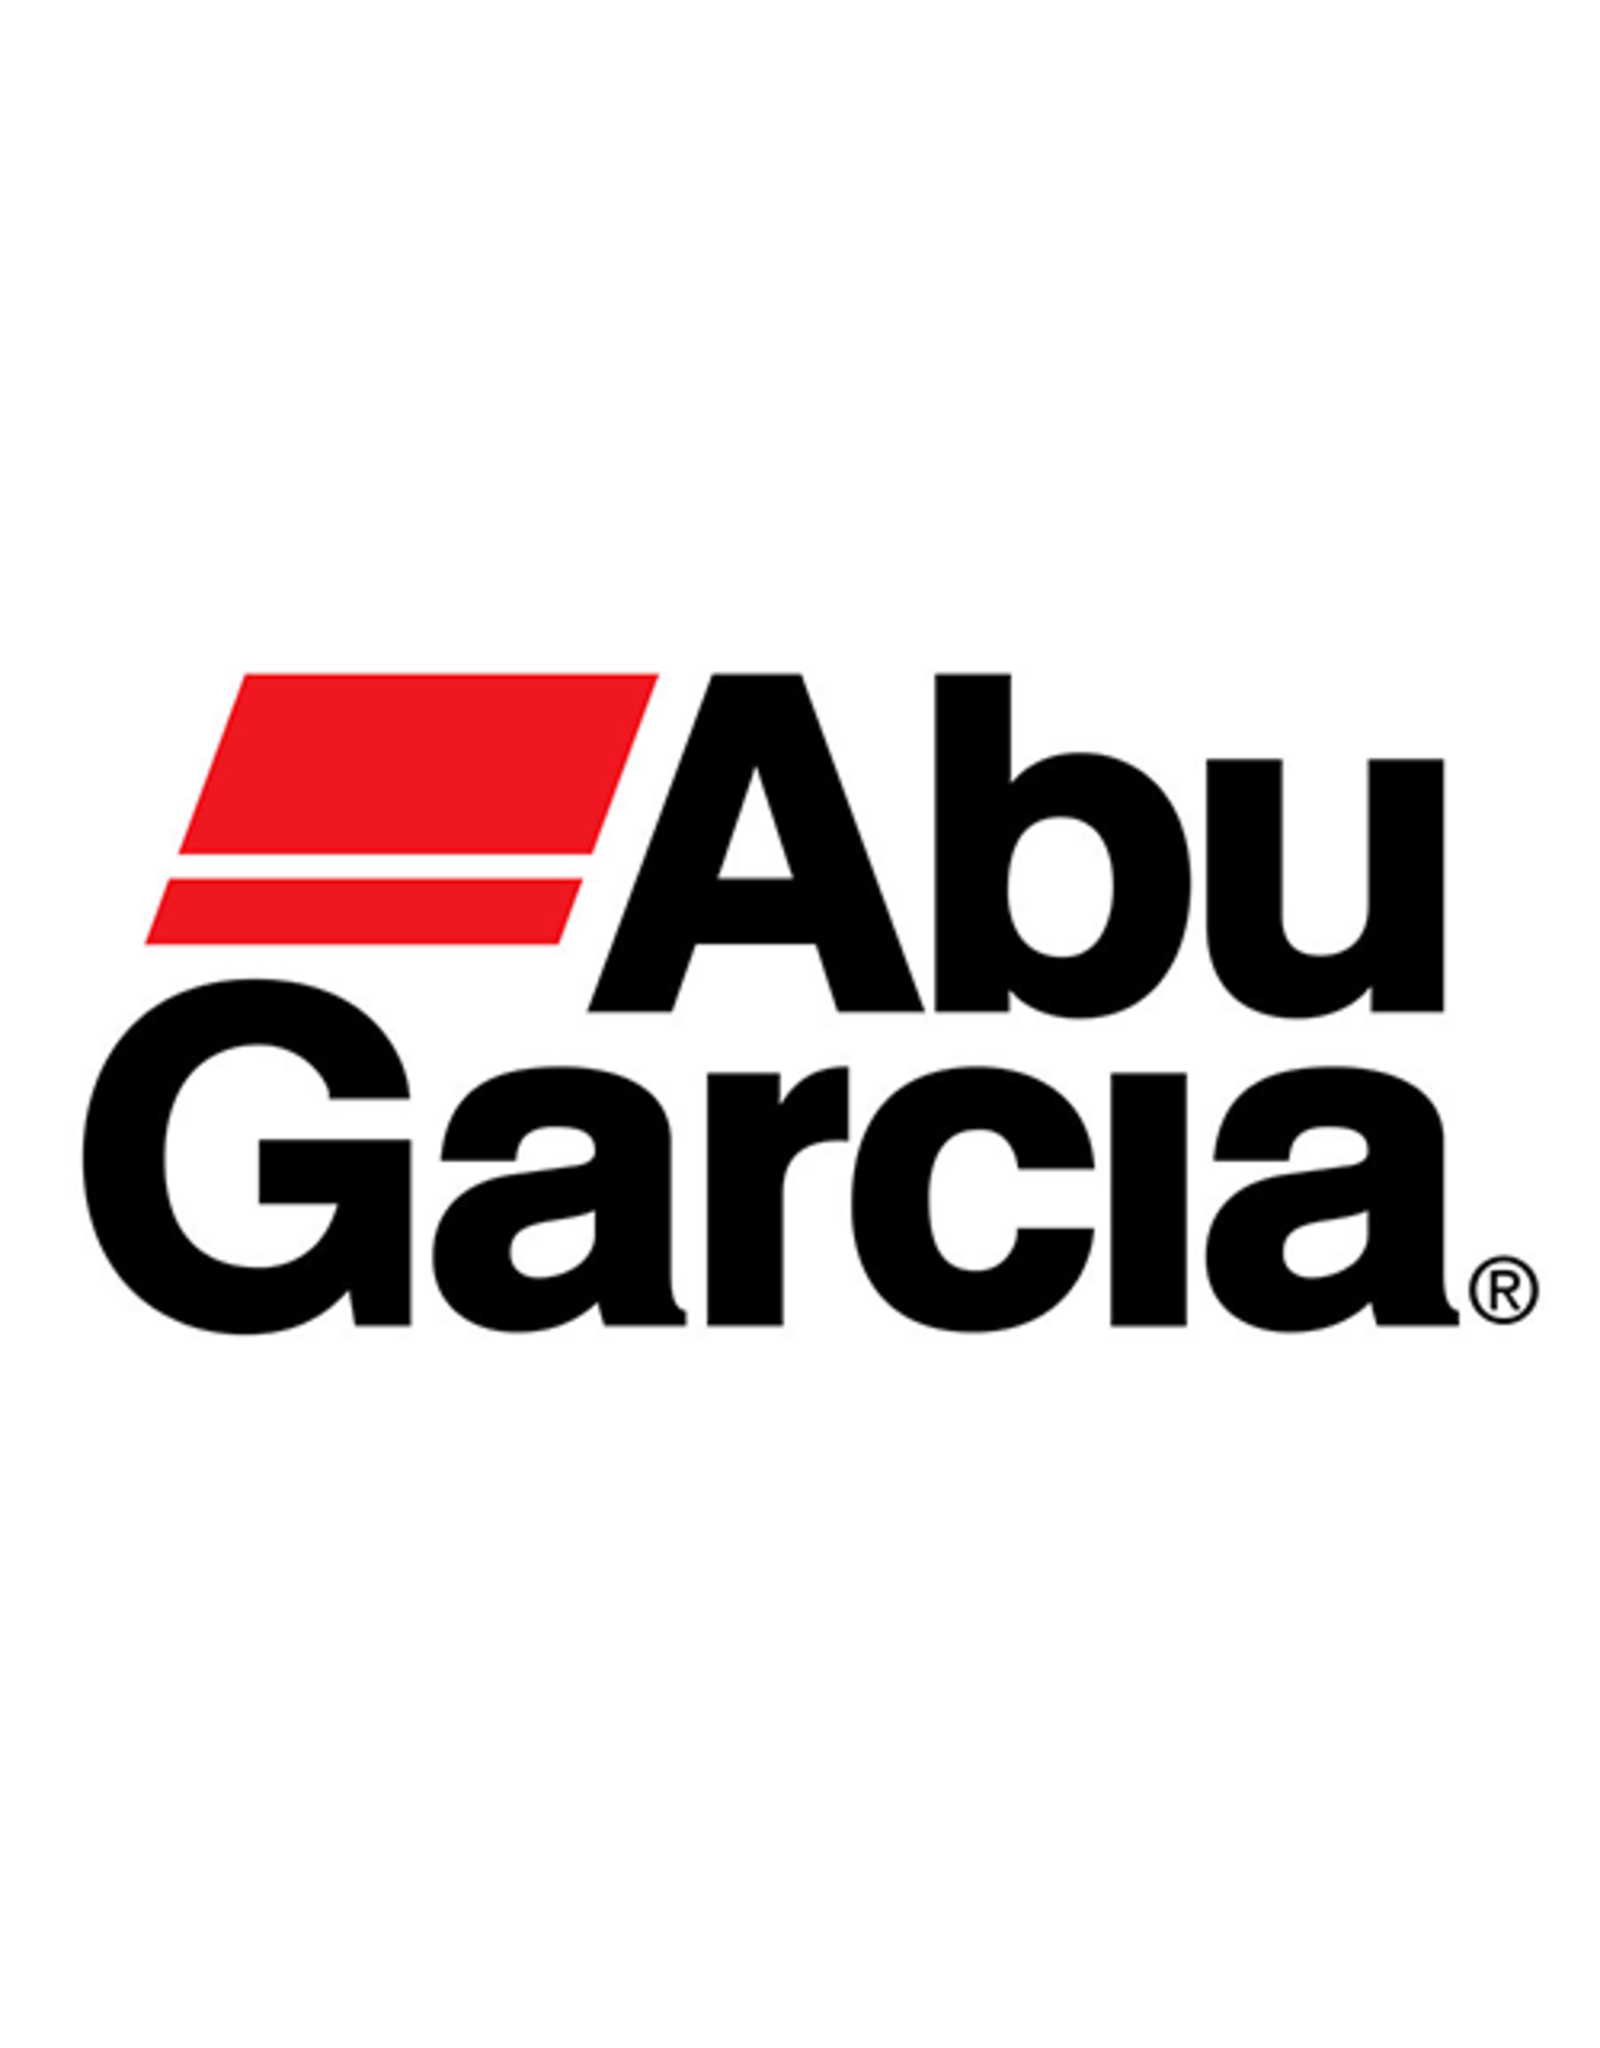 Abu Garcia 1134066  SPRING